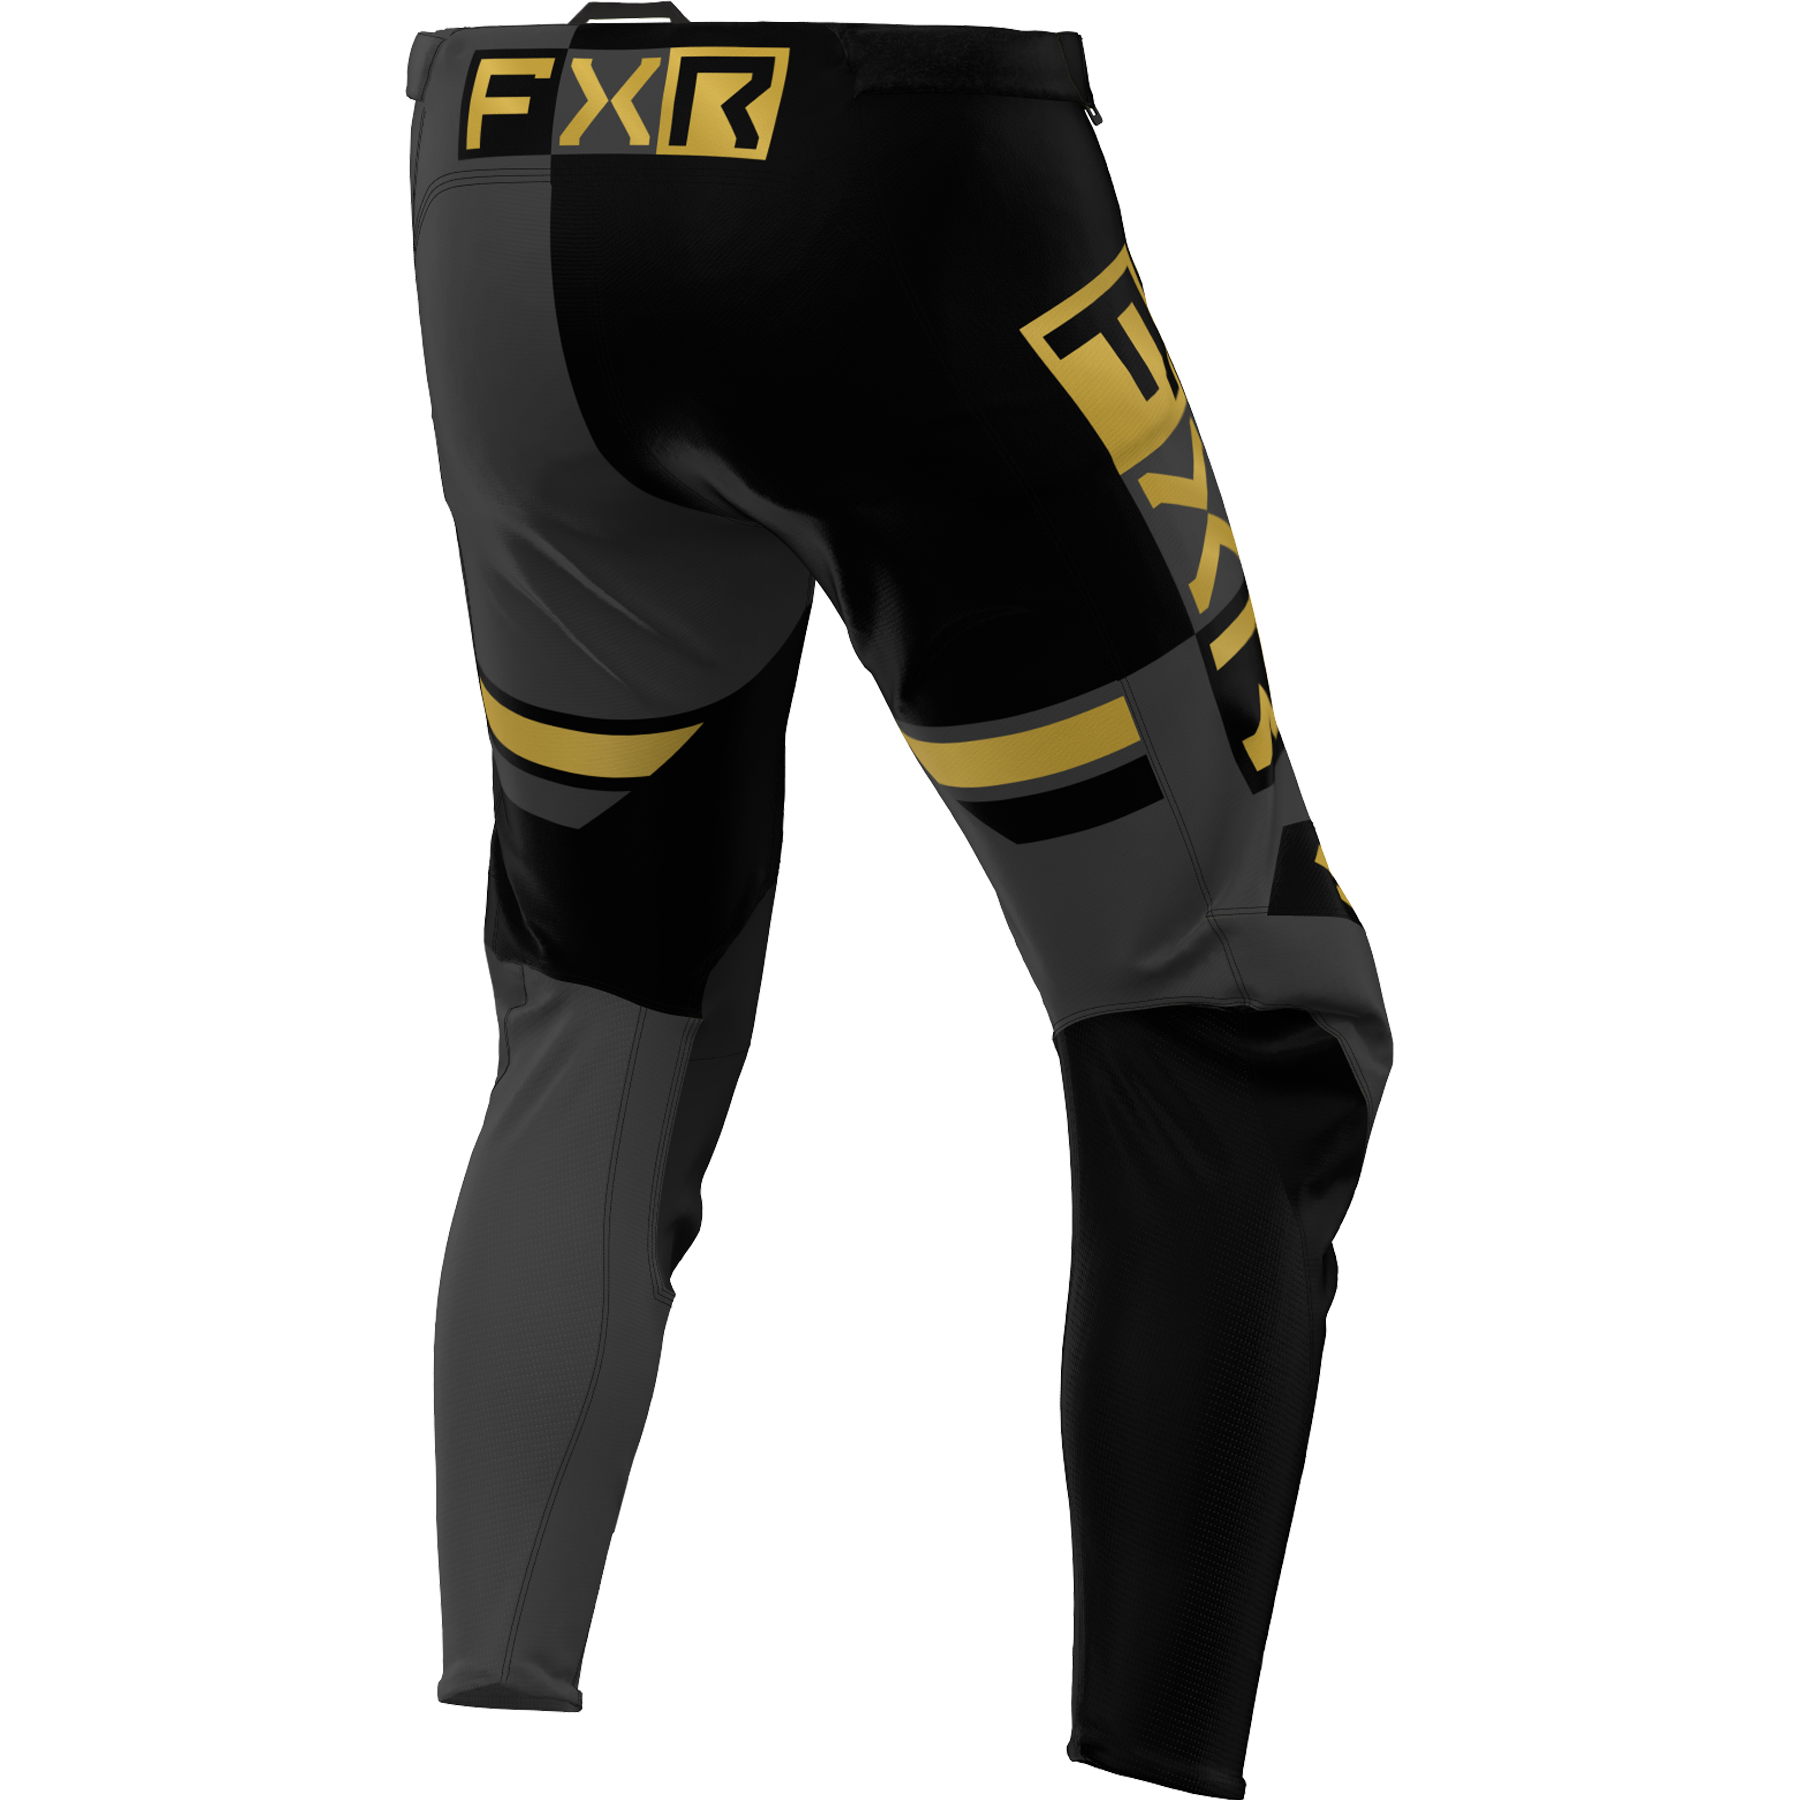 FXR Podium Pro Battalion 2024.5 MX Kit Combo Black/Charcoal/Gold